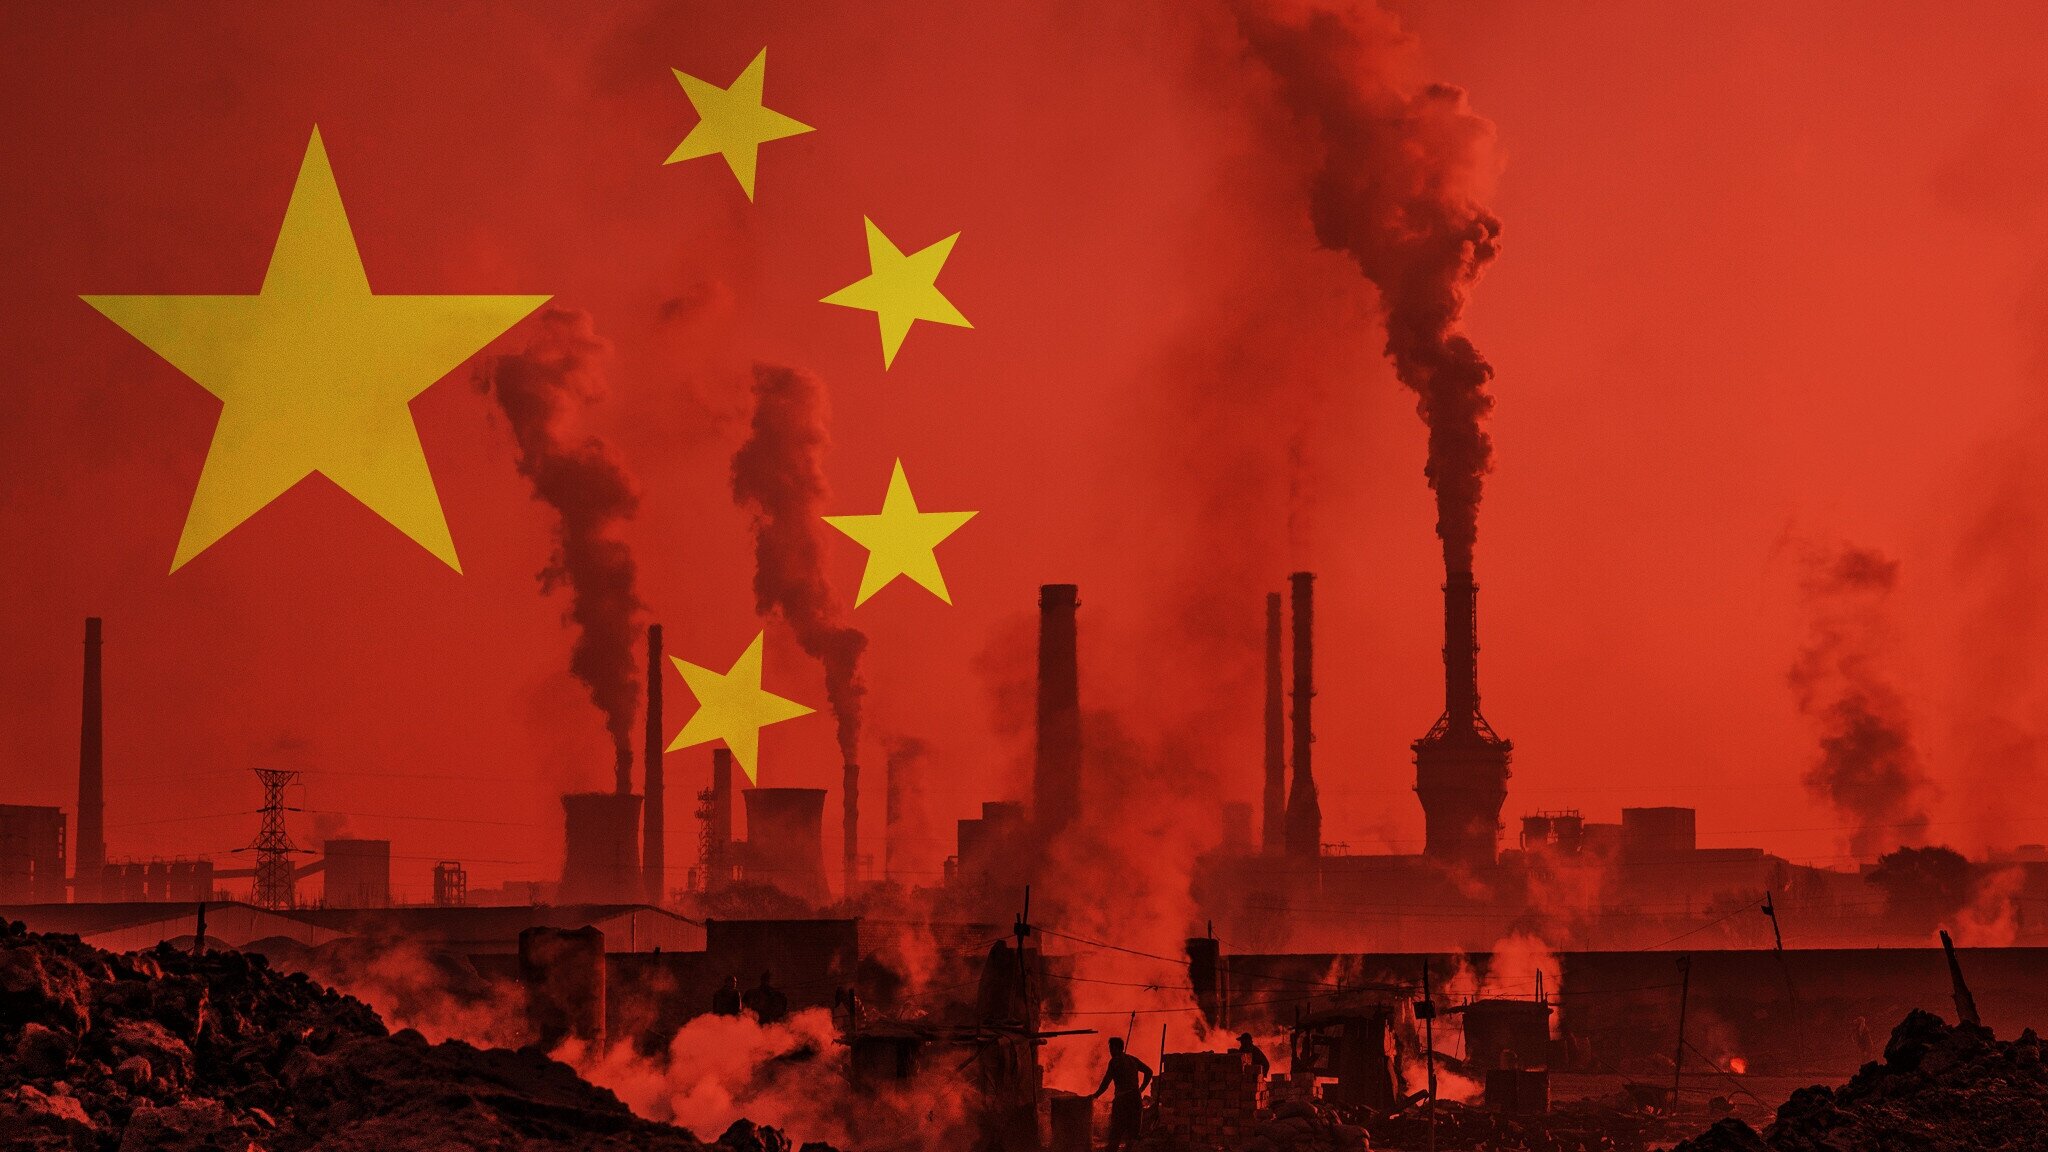 Sự suy yếu của Trung Quốc: Còn nhiều hơn ngoài COVID